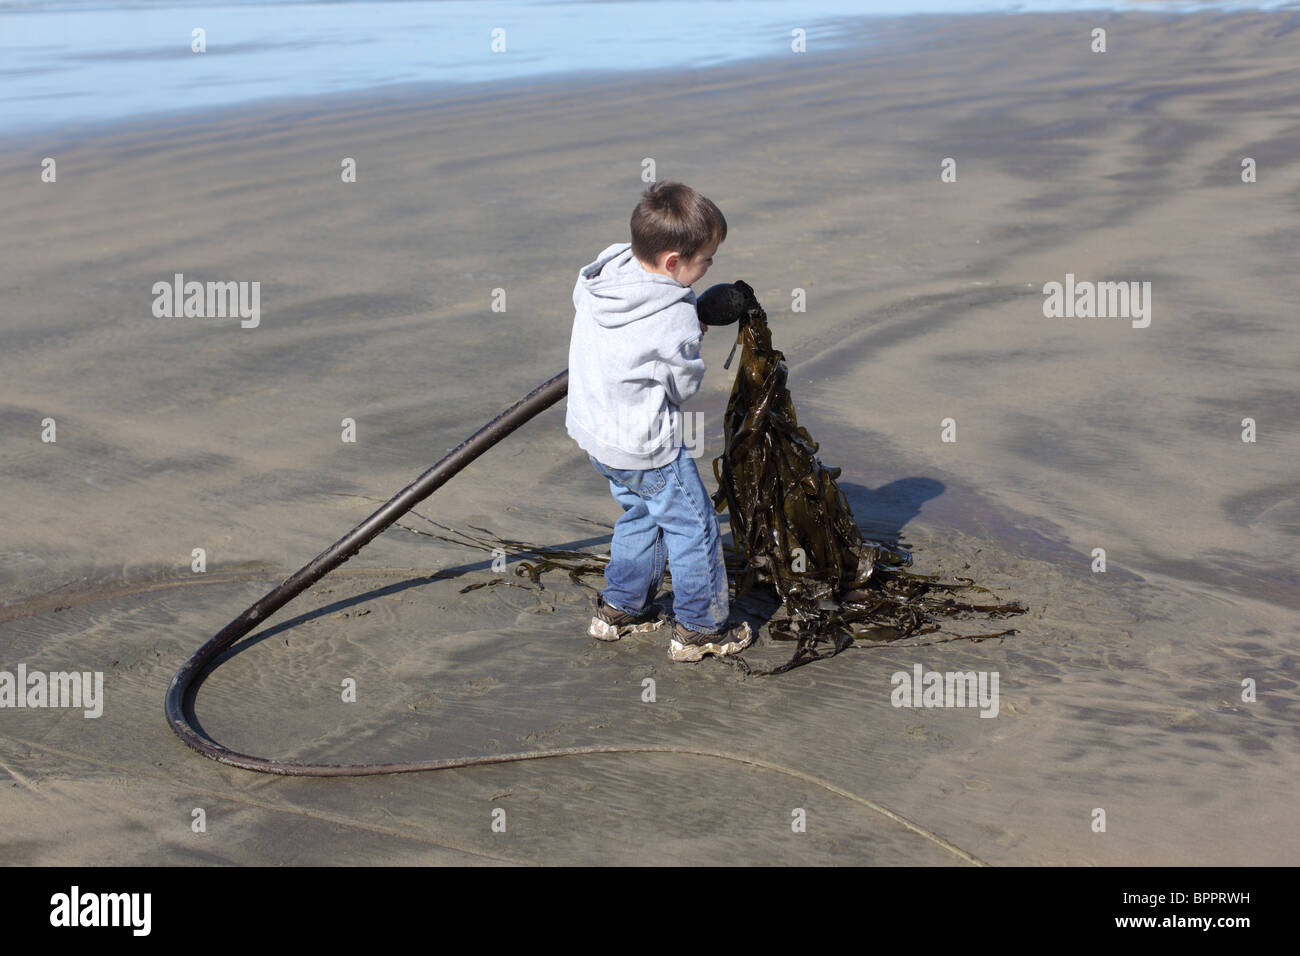 Jeune garçon à la plage ramasser des algues Banque D'Images